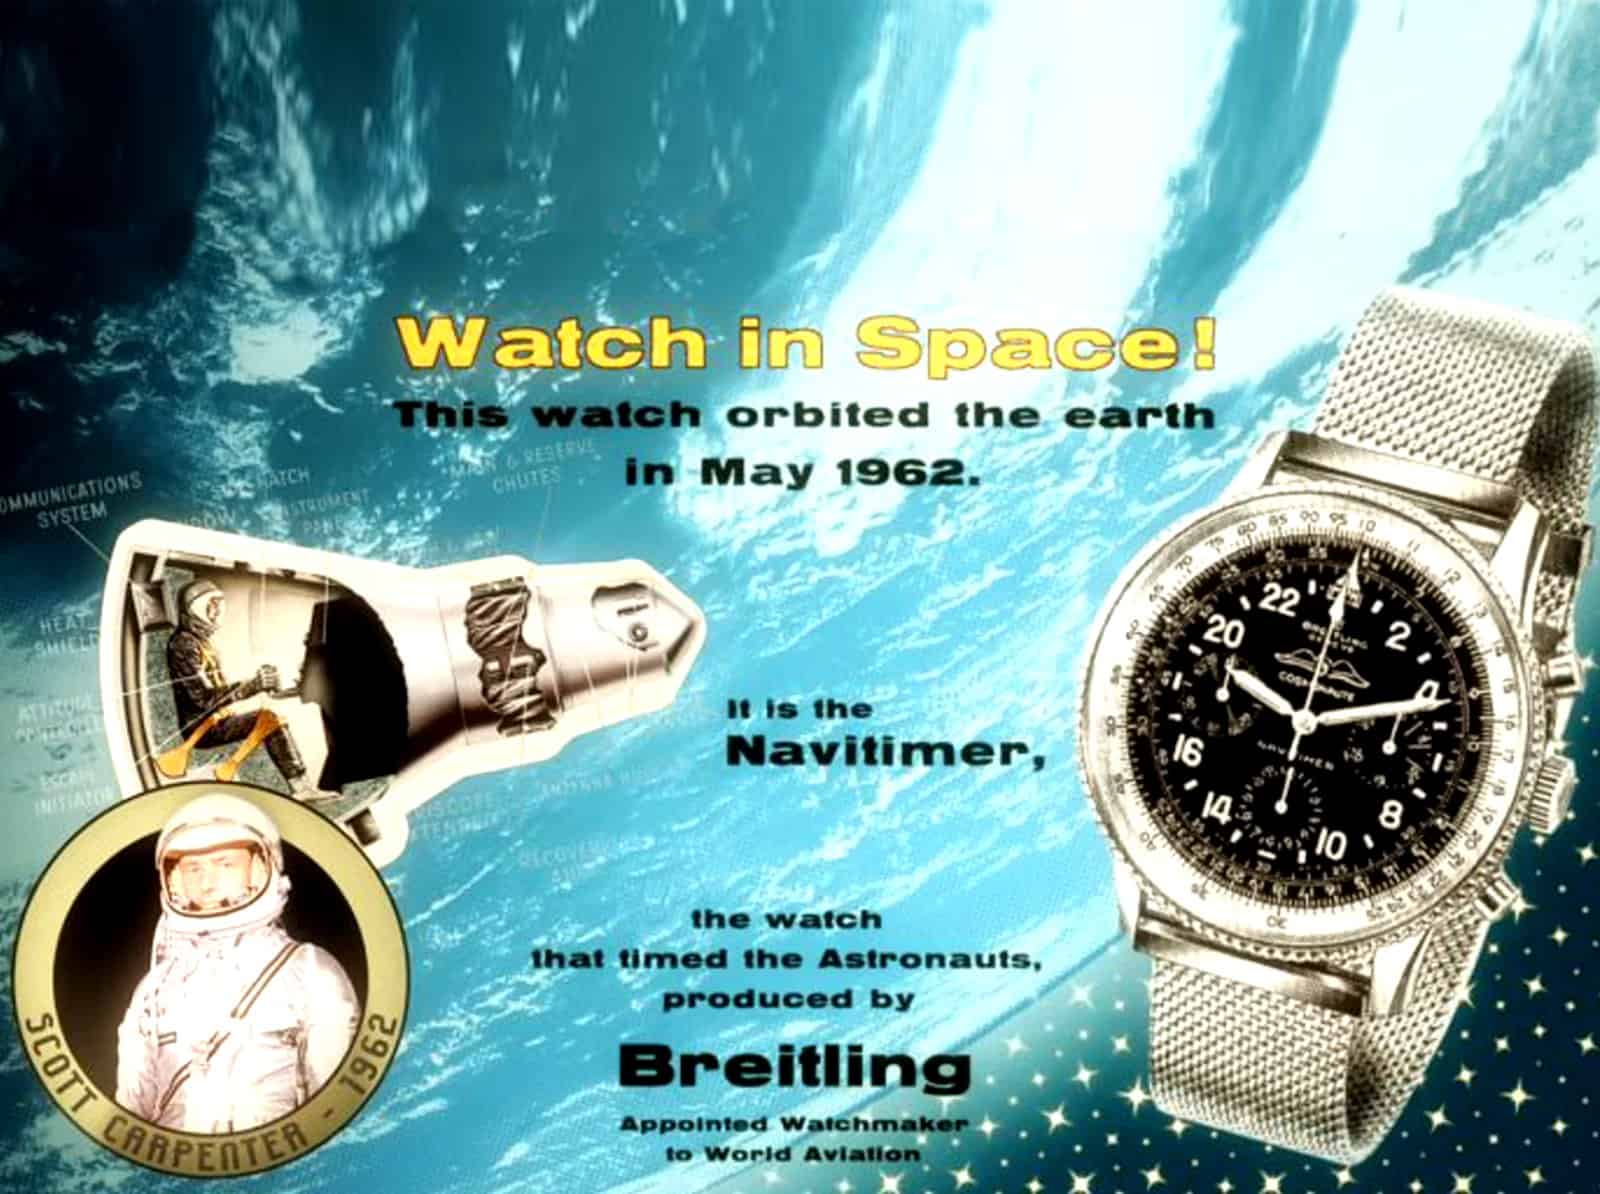 Anzeige für den Breitling Navitimer Cosmonaute in den USA von 1963 mit Aurora 7 und Scott Carpenter